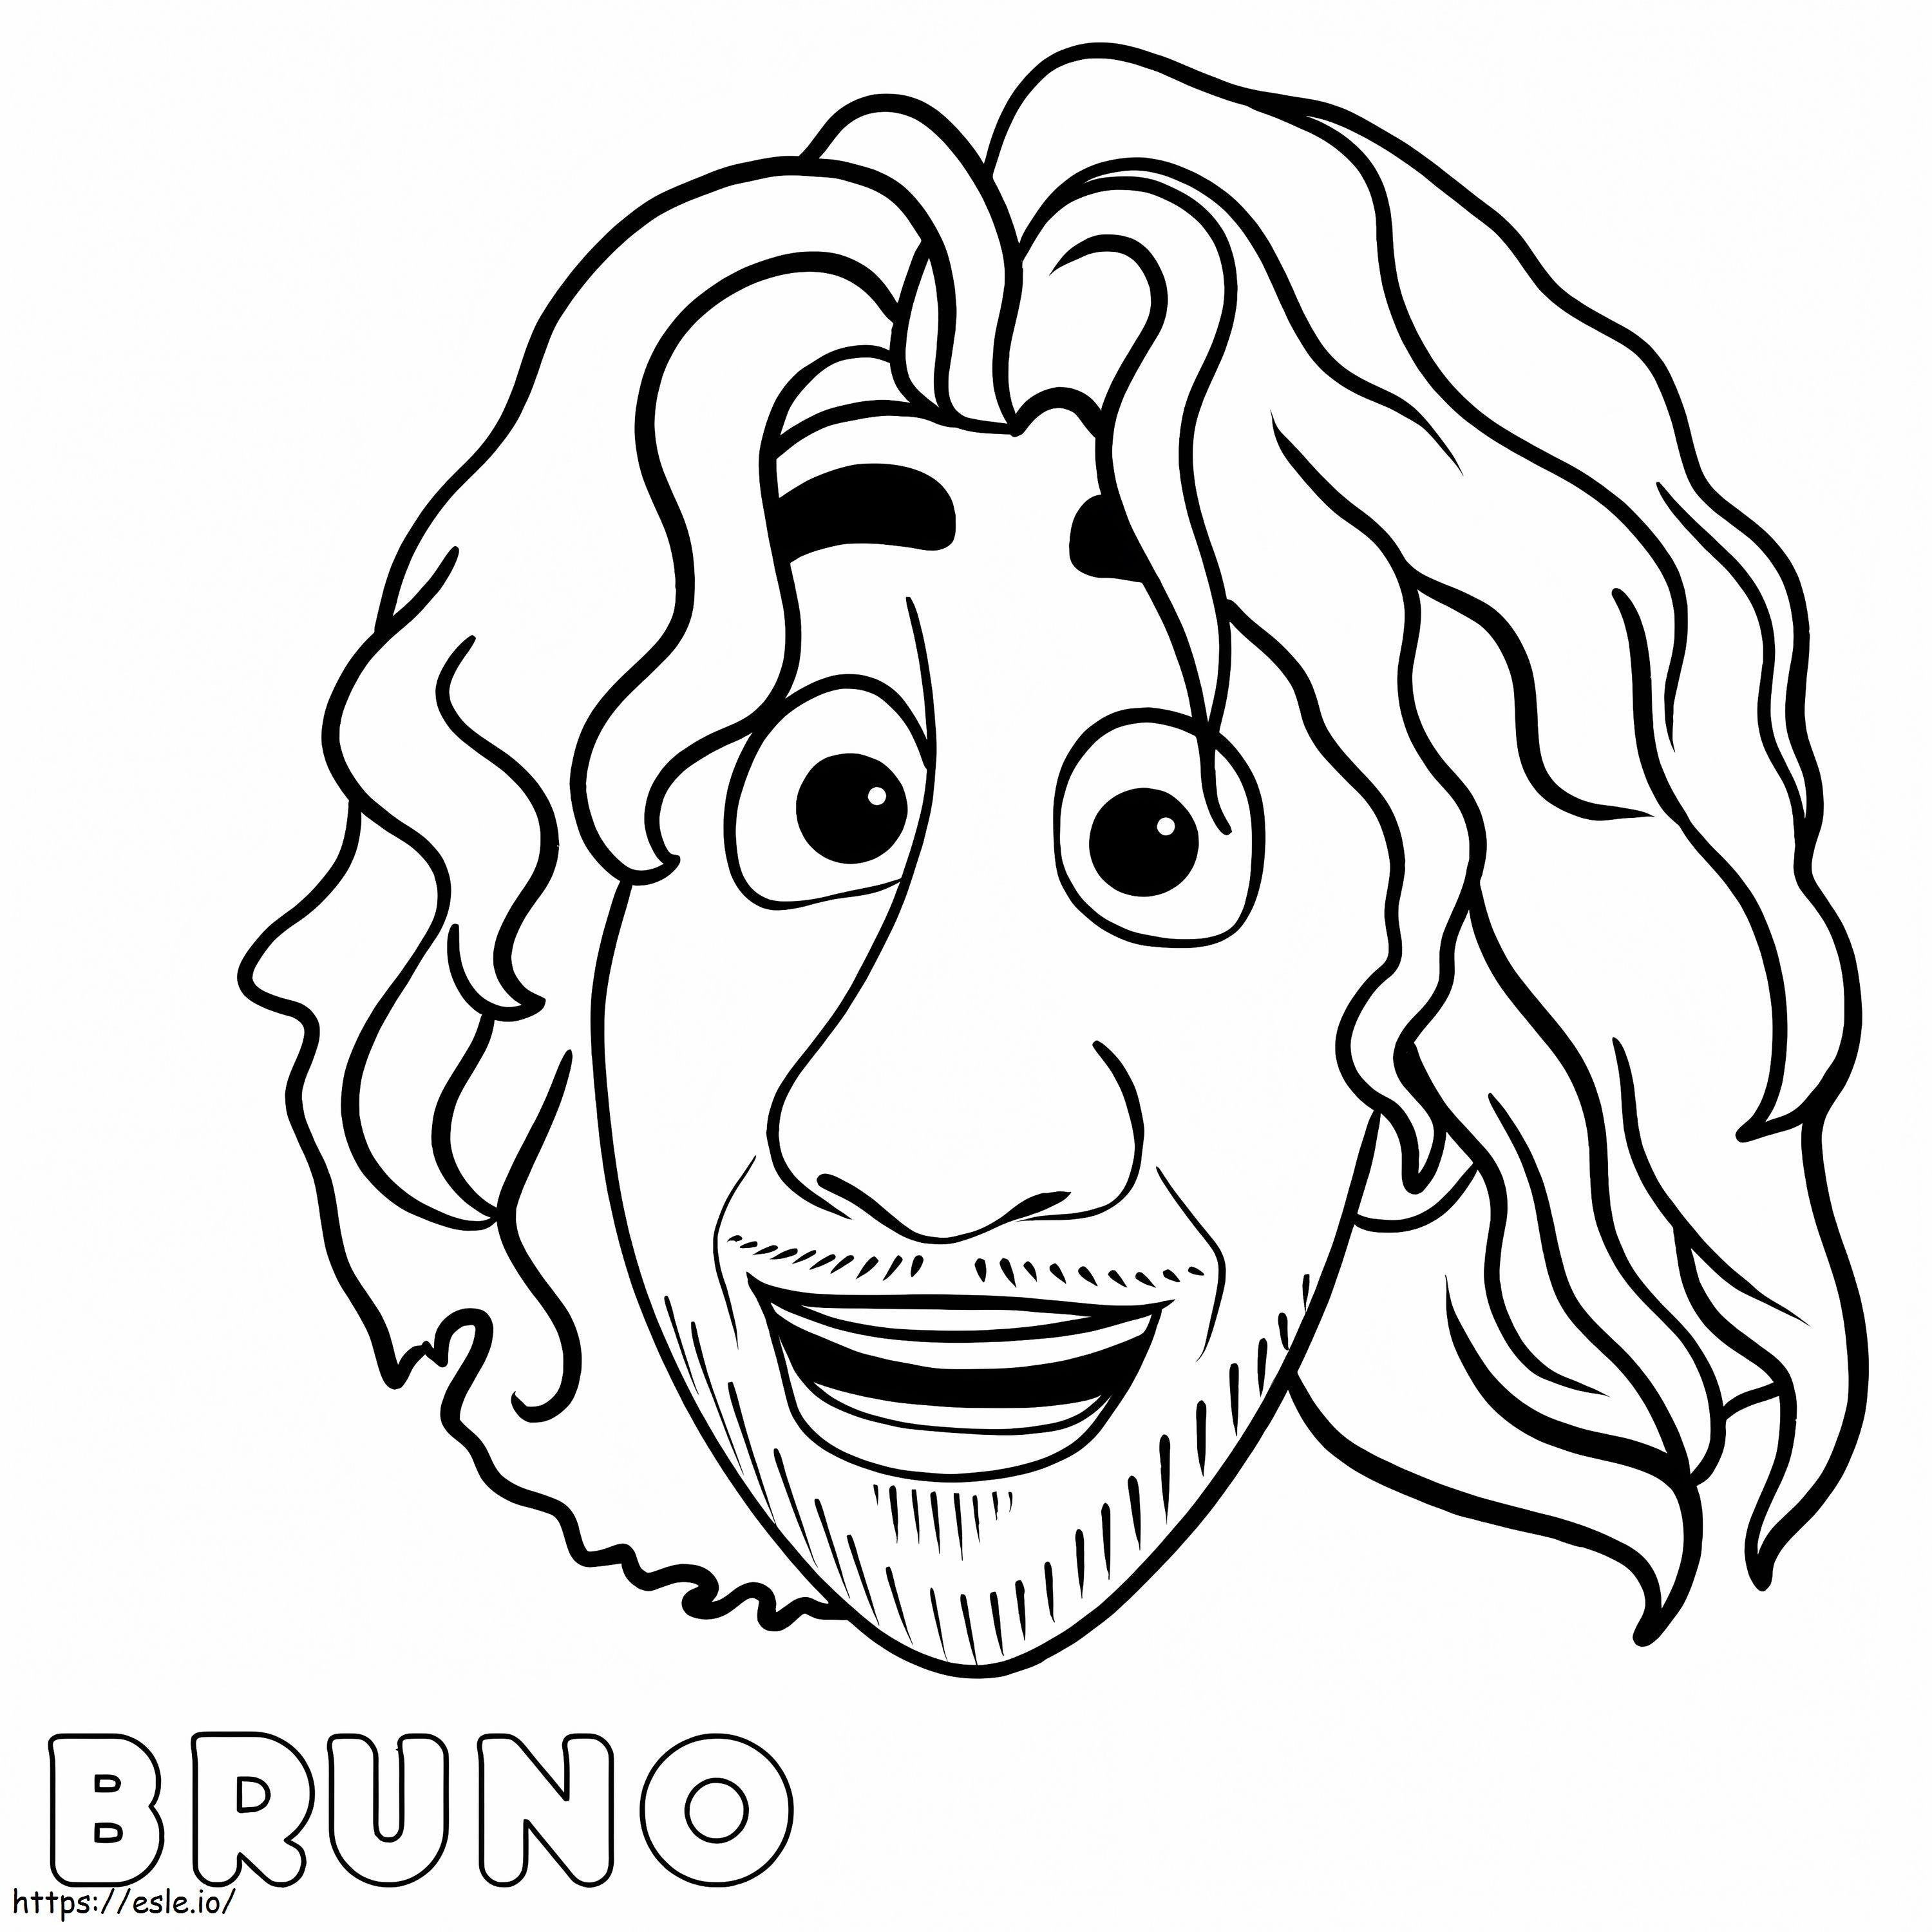 Bruno Encanto coloring page